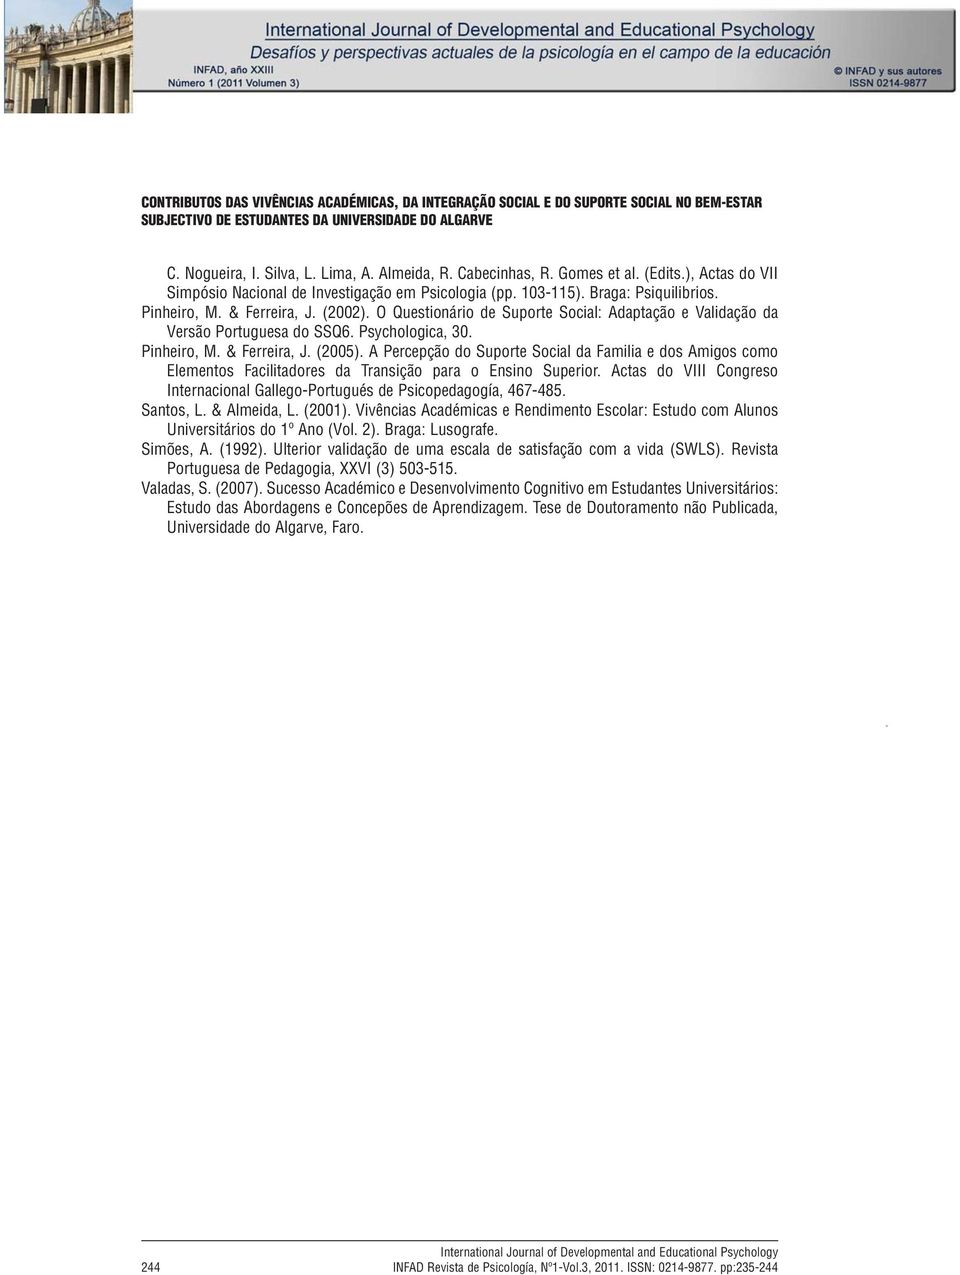 Lima, A. Almeida, R. Cabecinhas, R. Gomes et al. (Edits.), Actas do VII Simpósio Nacional de Investigação em Psicologia (pp. 103-115). Braga: Psiquilibrios. Pinheiro, M. & Ferreira, J. (2002).